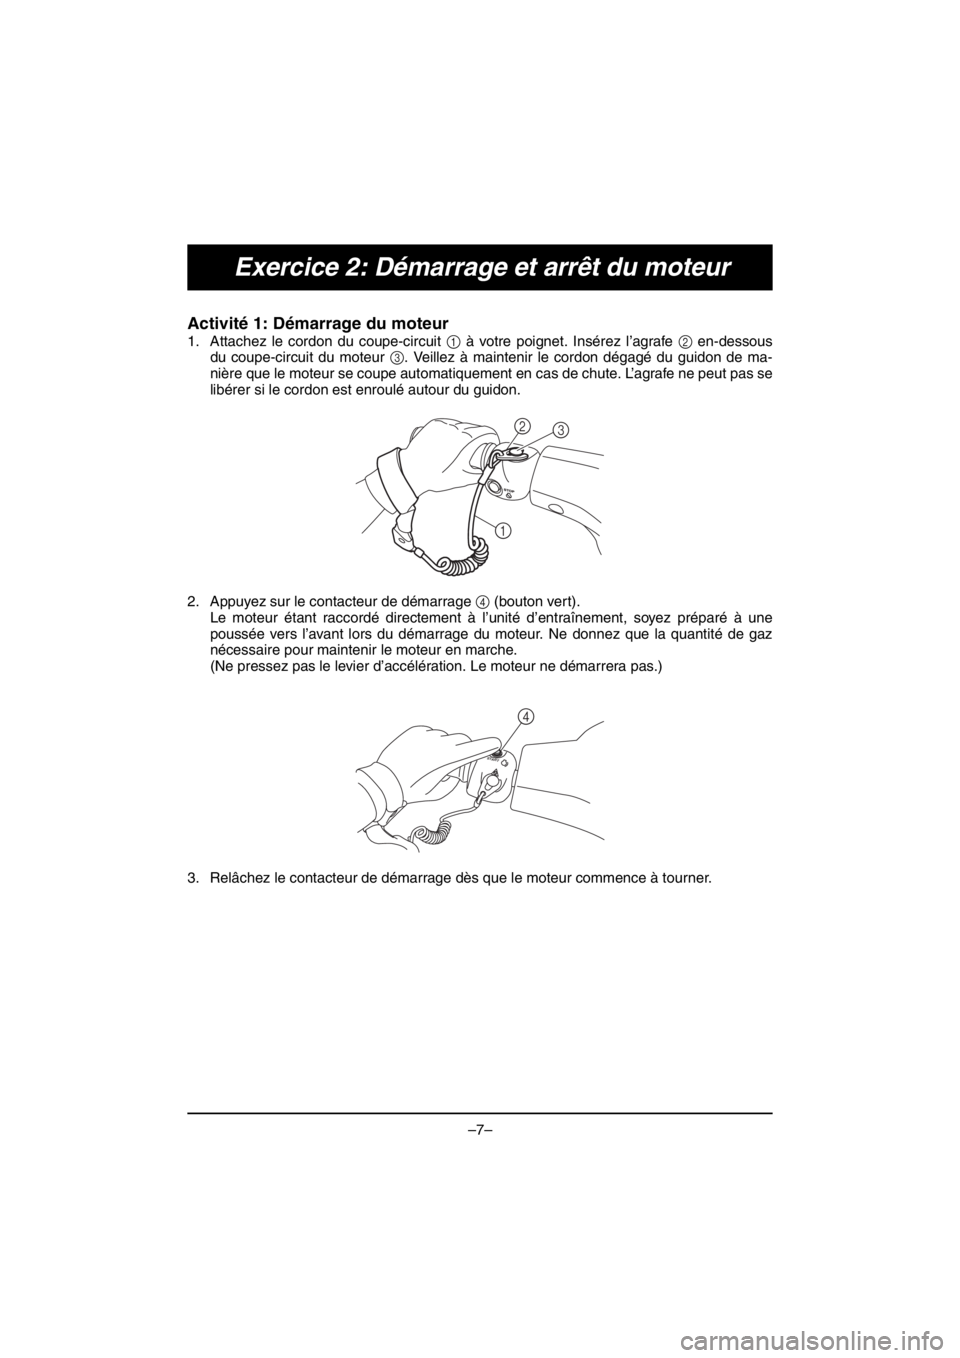 YAMAHA V1 2016  Notices Demploi (in French) –7–
Exercice 2: Démarrage et arrêt du moteur
Activité 1: Démarrage du moteur 
1. Attachez le cordon du coupe-circuit 1 à votre poignet. Insérez l’agrafe 2 en-dessous
du coupe-circuit du mo